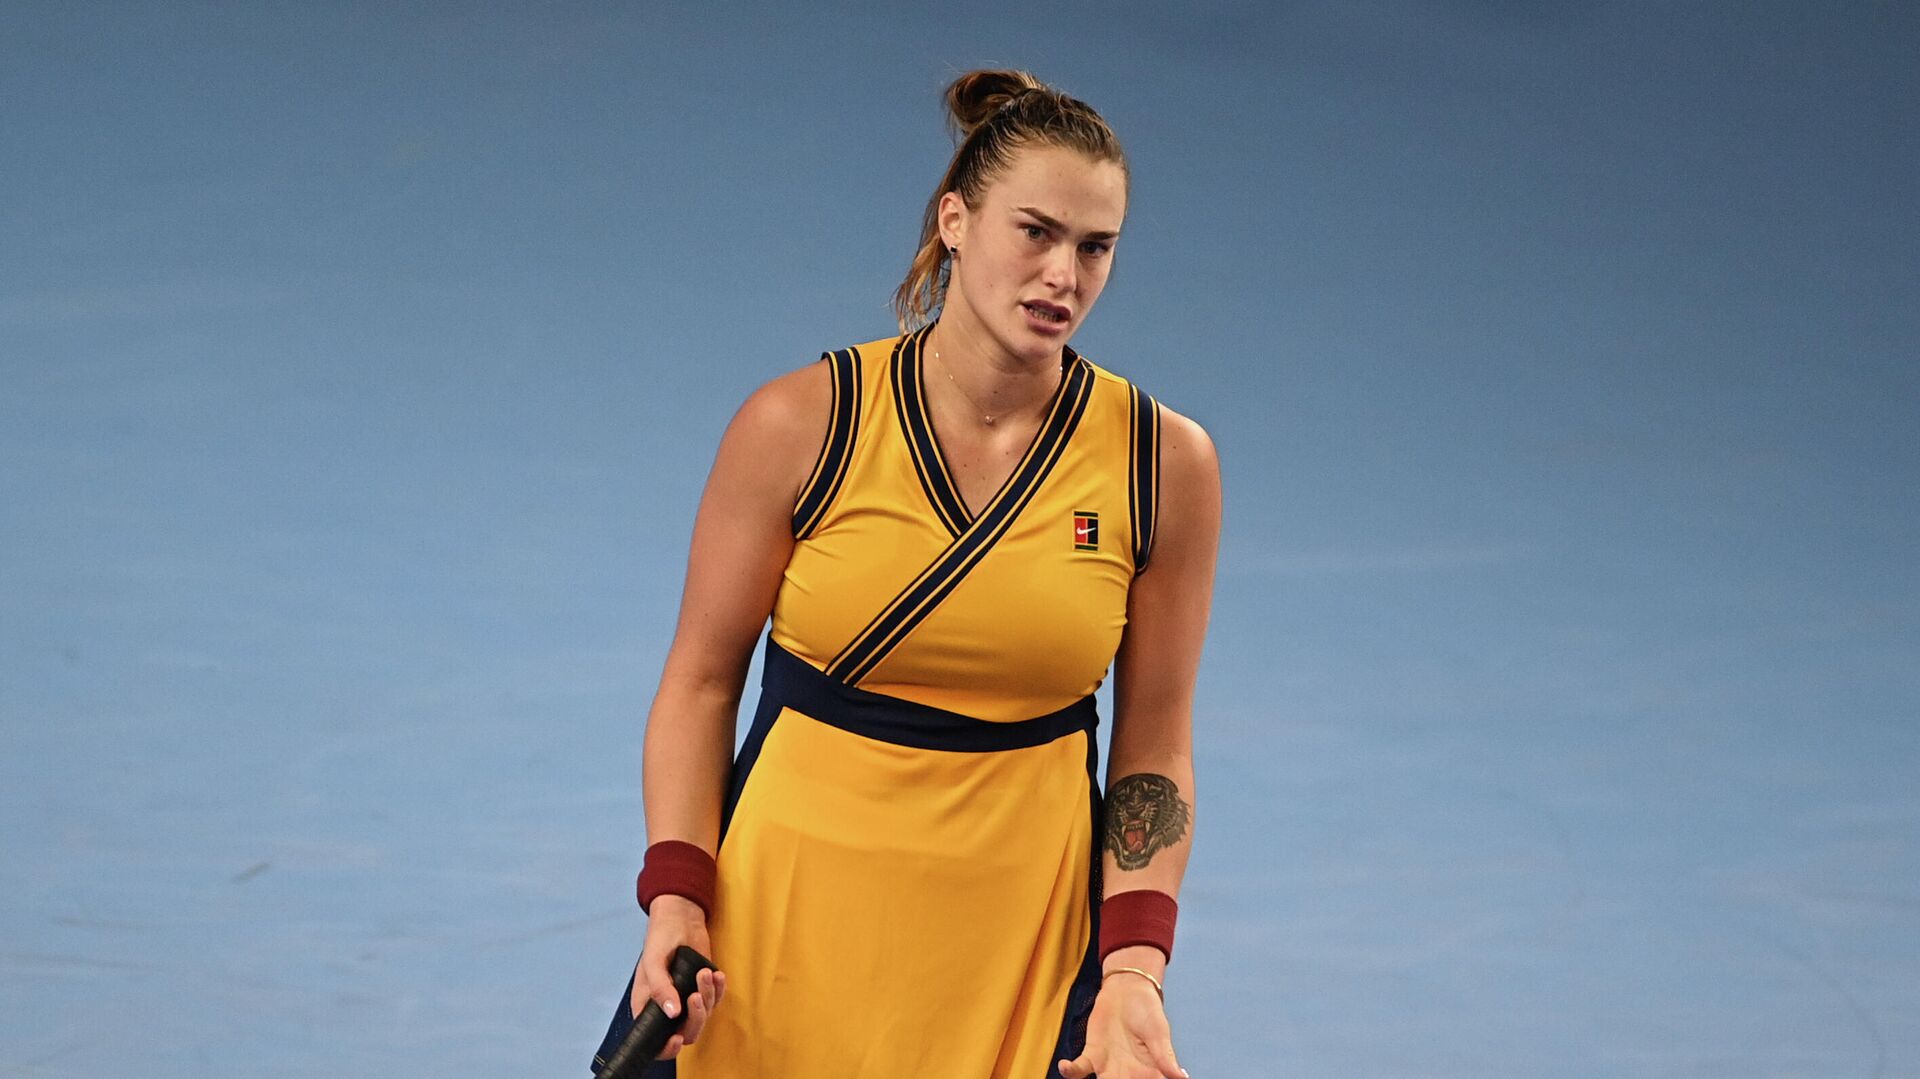 Соболенко в трех сетах одолела Сандерс в матче Australian Open и вышла во второй круг